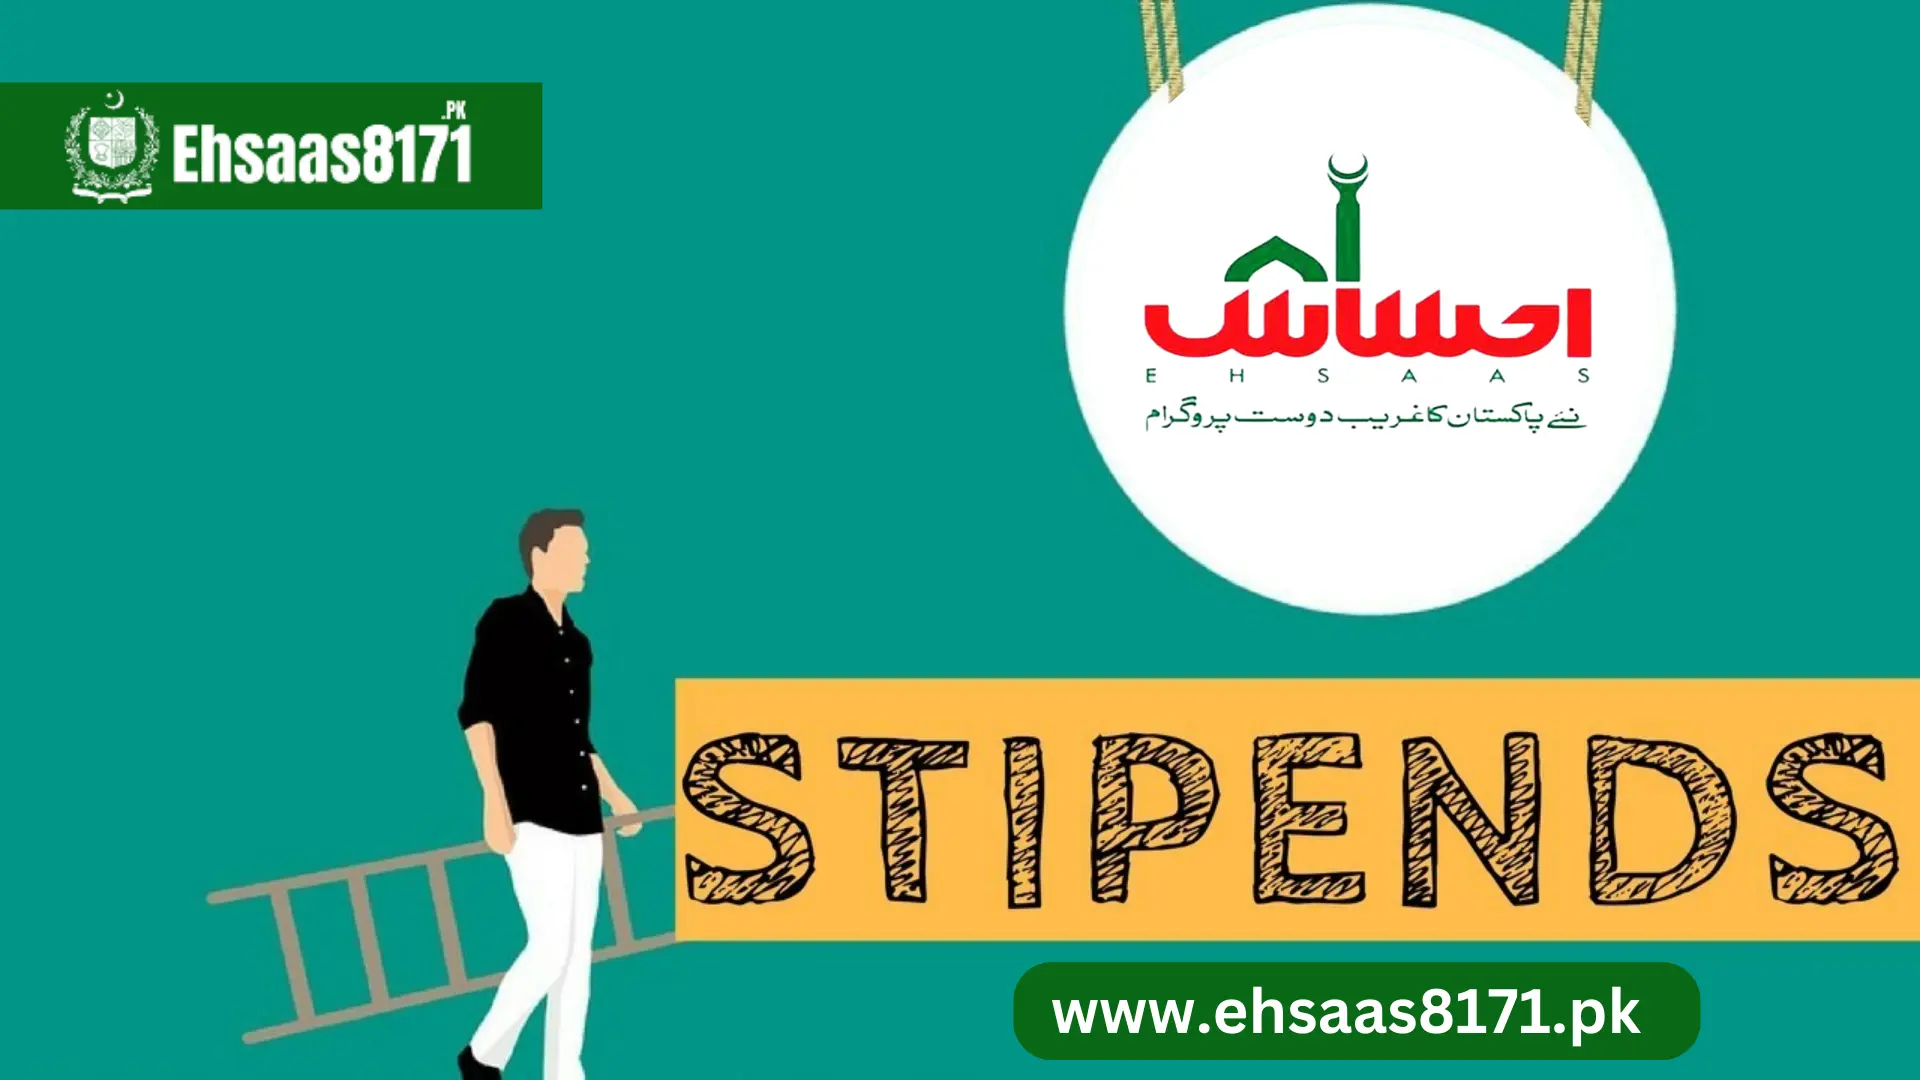 Stipend given in Ehsaas Waseela-e-Taleem program